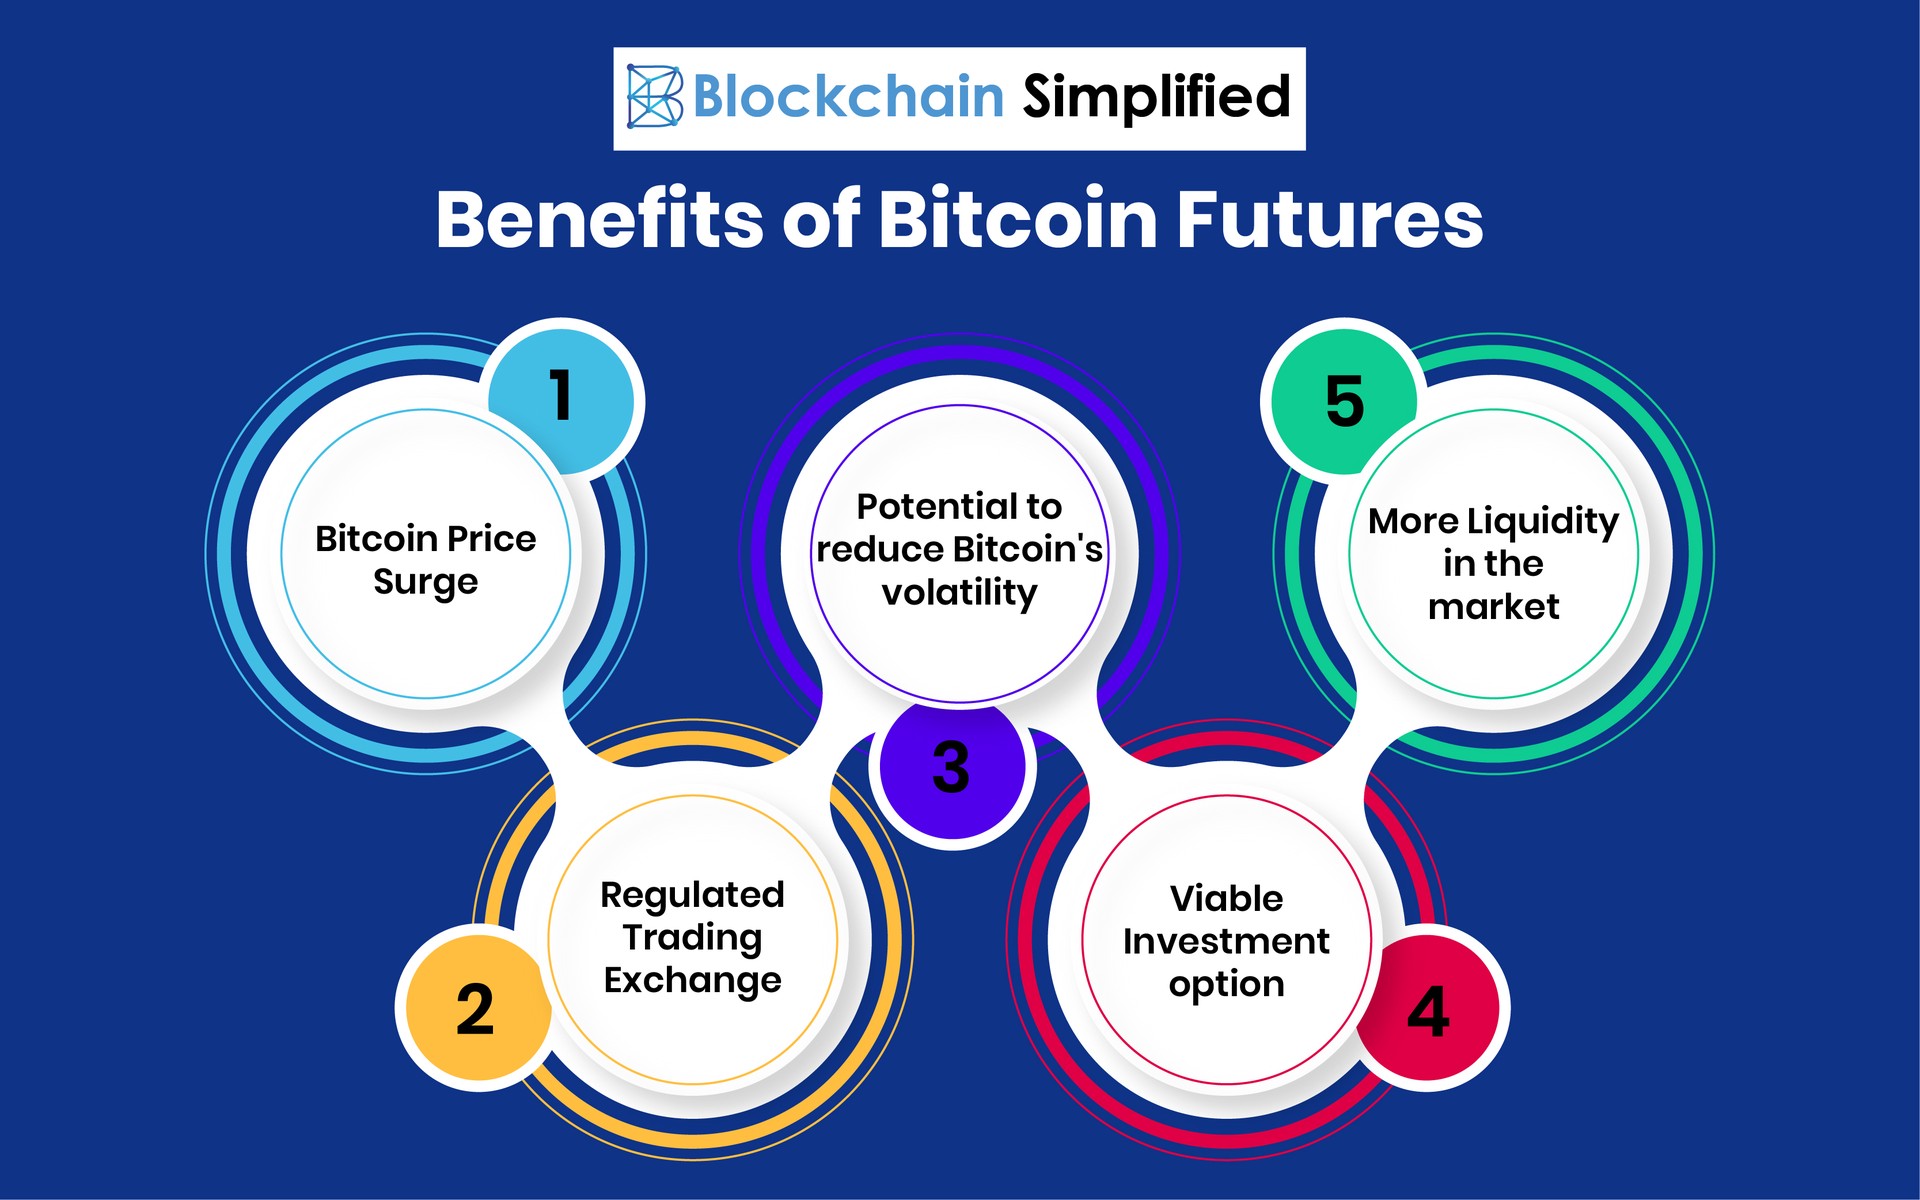 Bitcoin Futures benefits